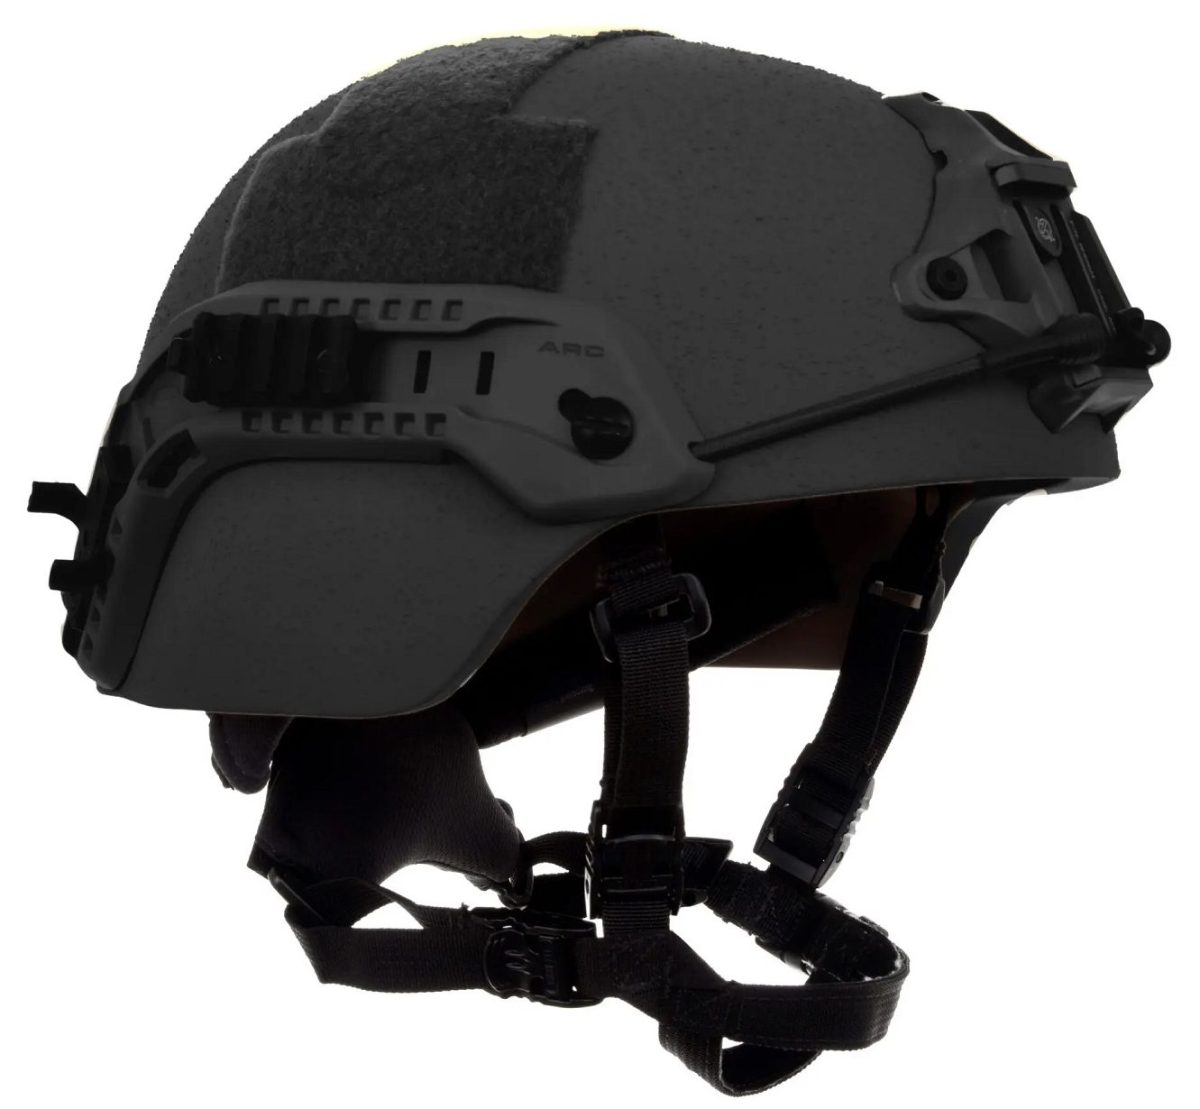 XTEC helmet